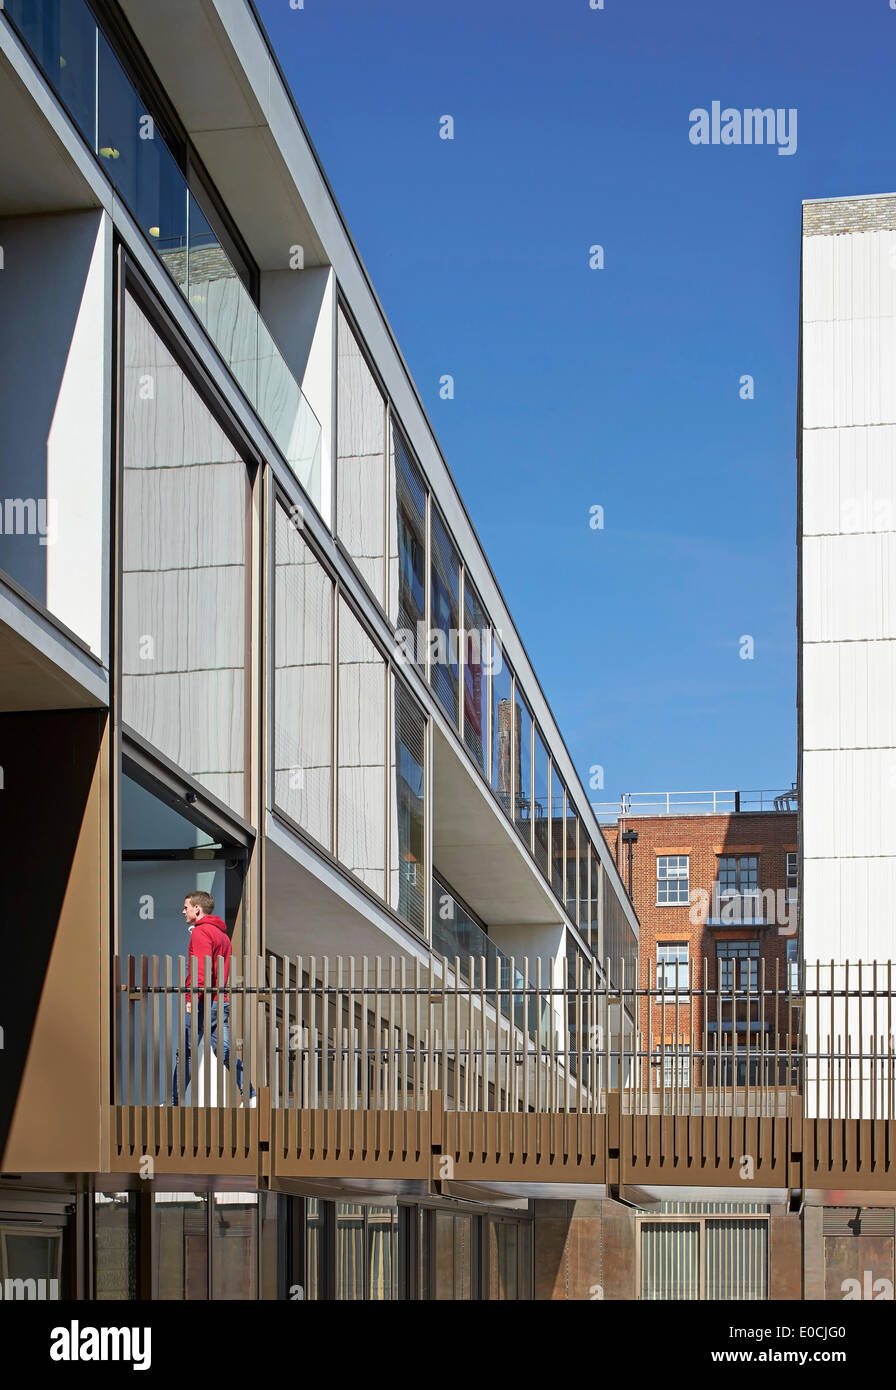 JW3, London, Vereinigtes Königreich. Architekt: Lifschutz Davidson Sandilands, 2014. Box-Balkenbrücke zum Eingang Mezzanine-Ebene. Stockfoto